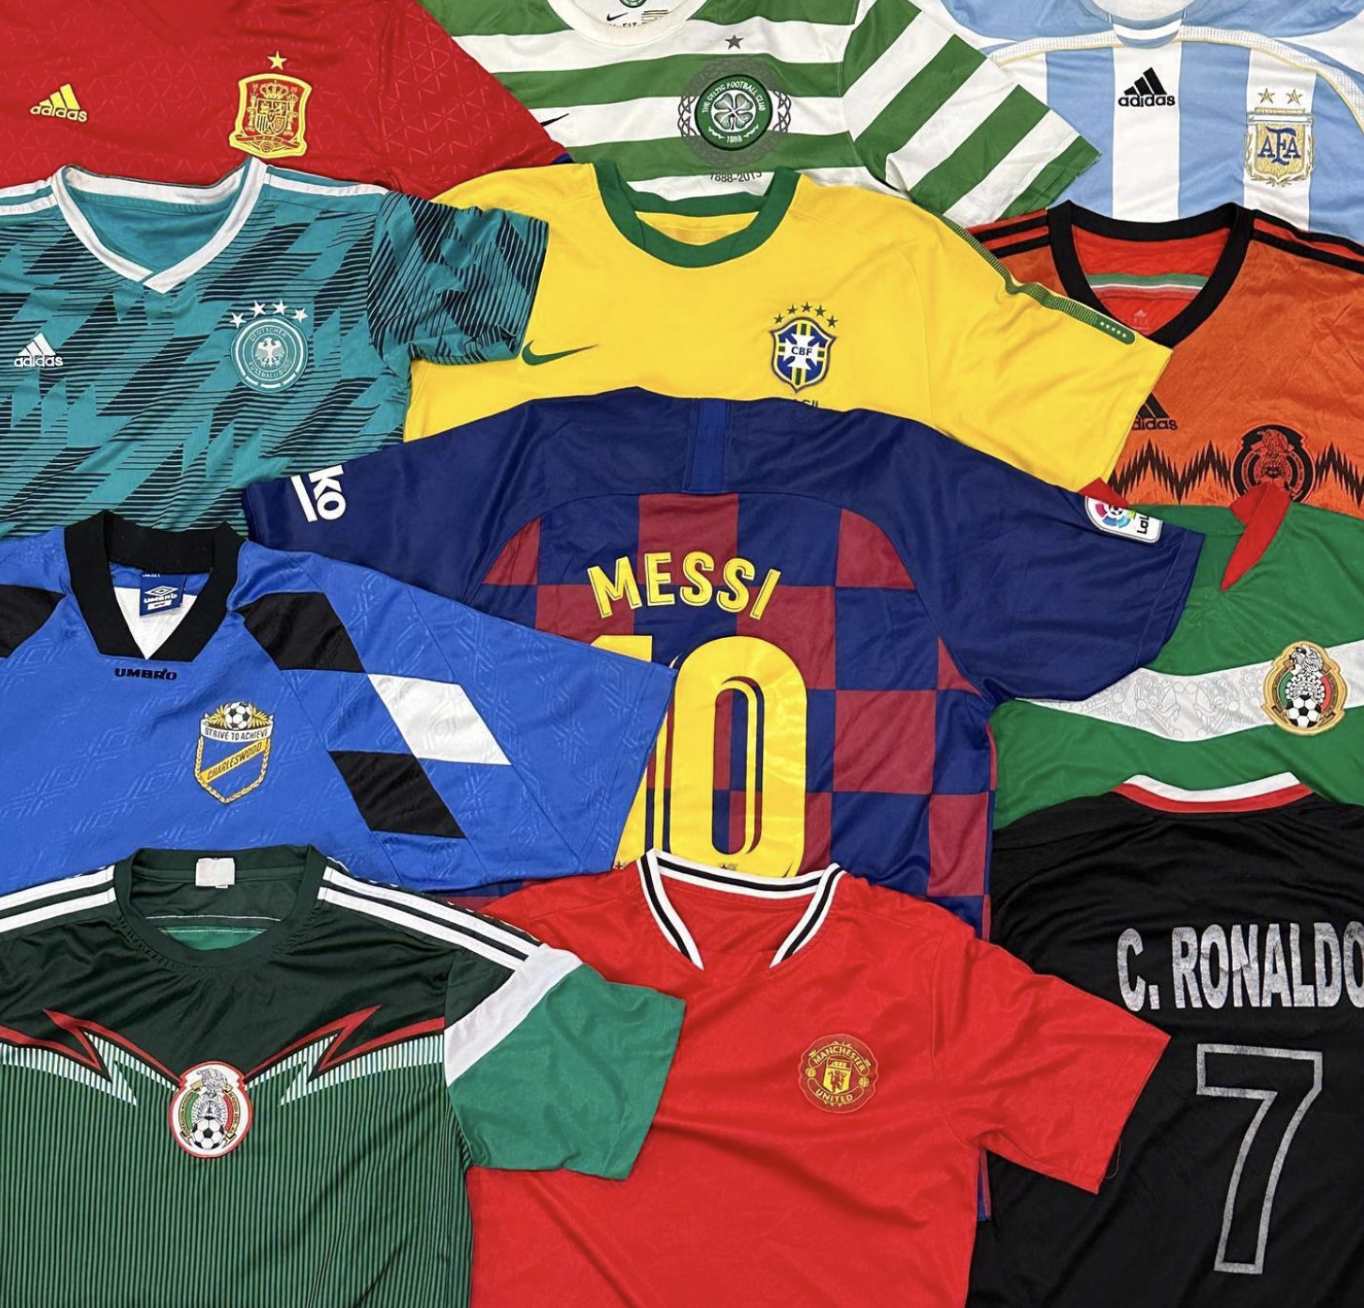 picture of vintage sportswear football jerseys